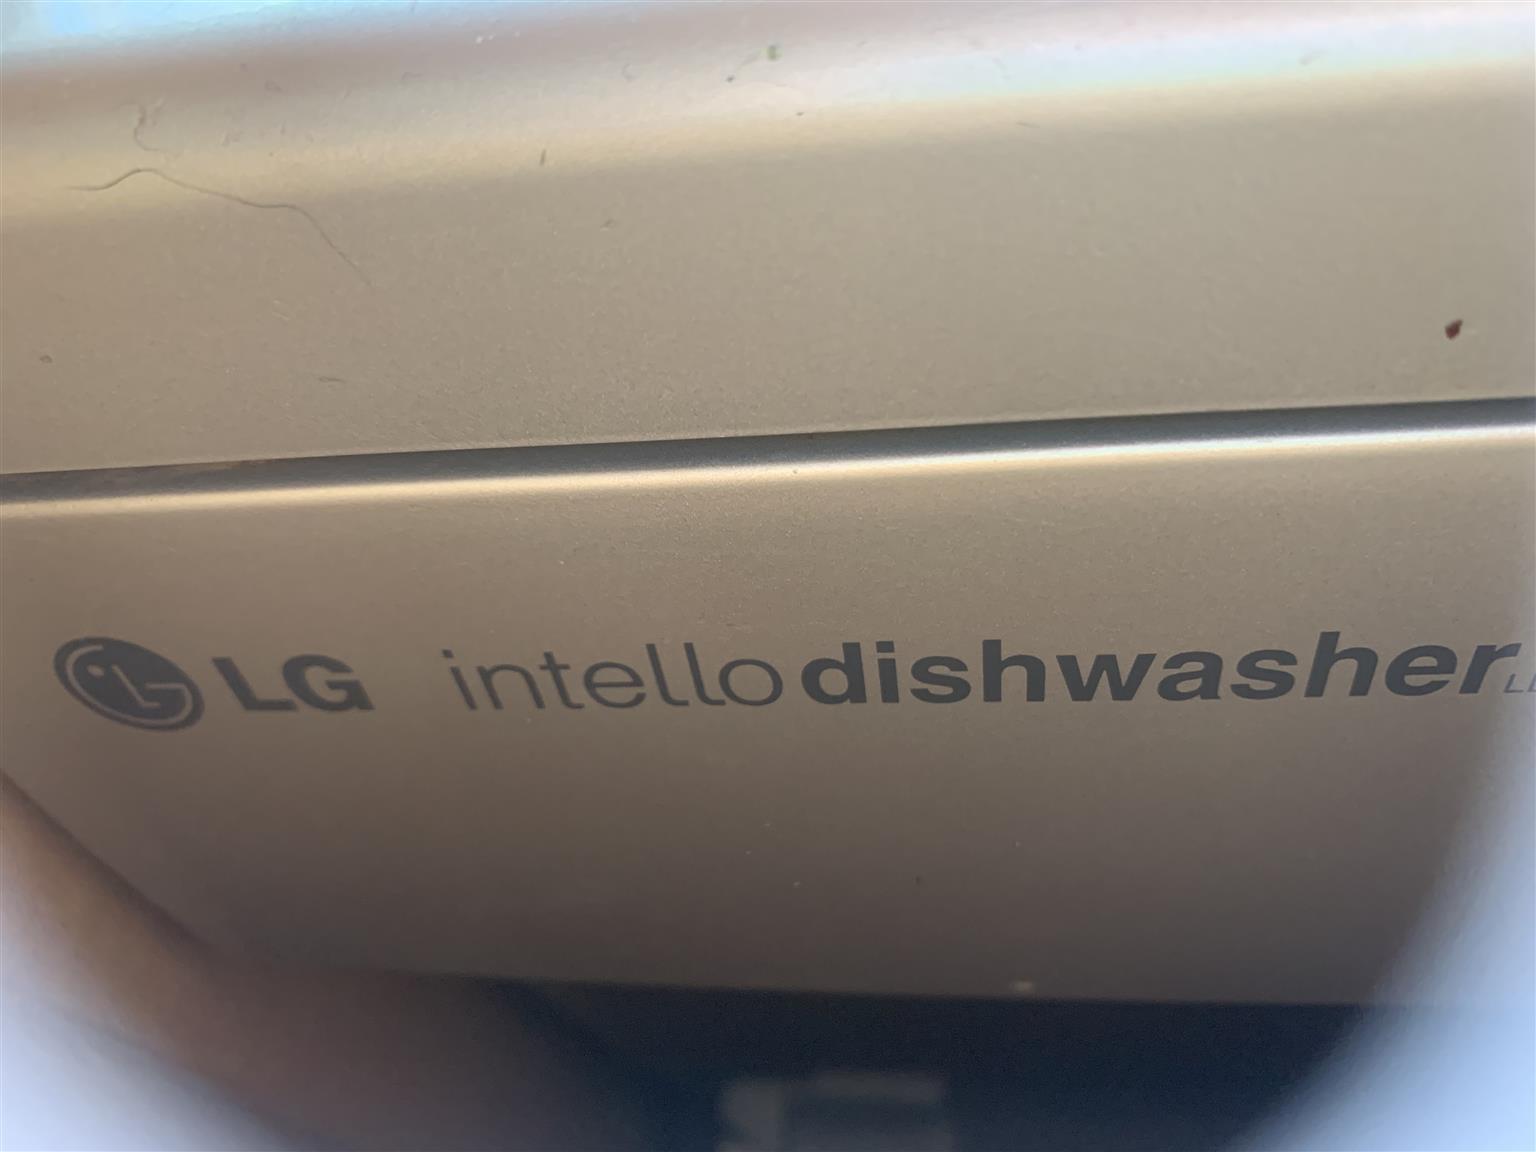 LG dishwasher broken for sale